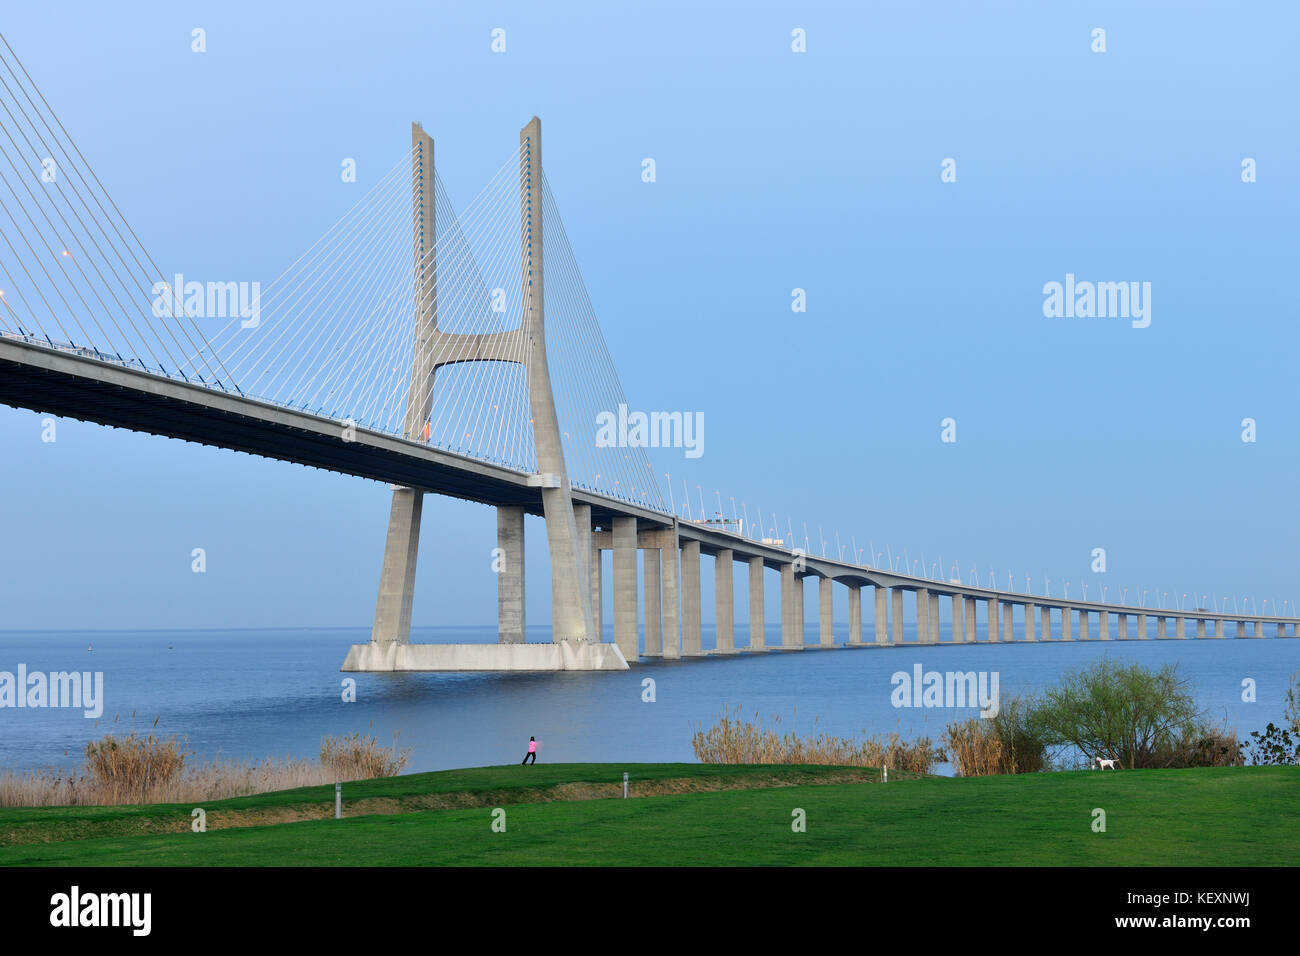 Dal ponte Vasco da Gama sul fiume Tago (Tejo il fiume), il più lungo ponte in Europa. Lisbona, Portogallo Foto Stock